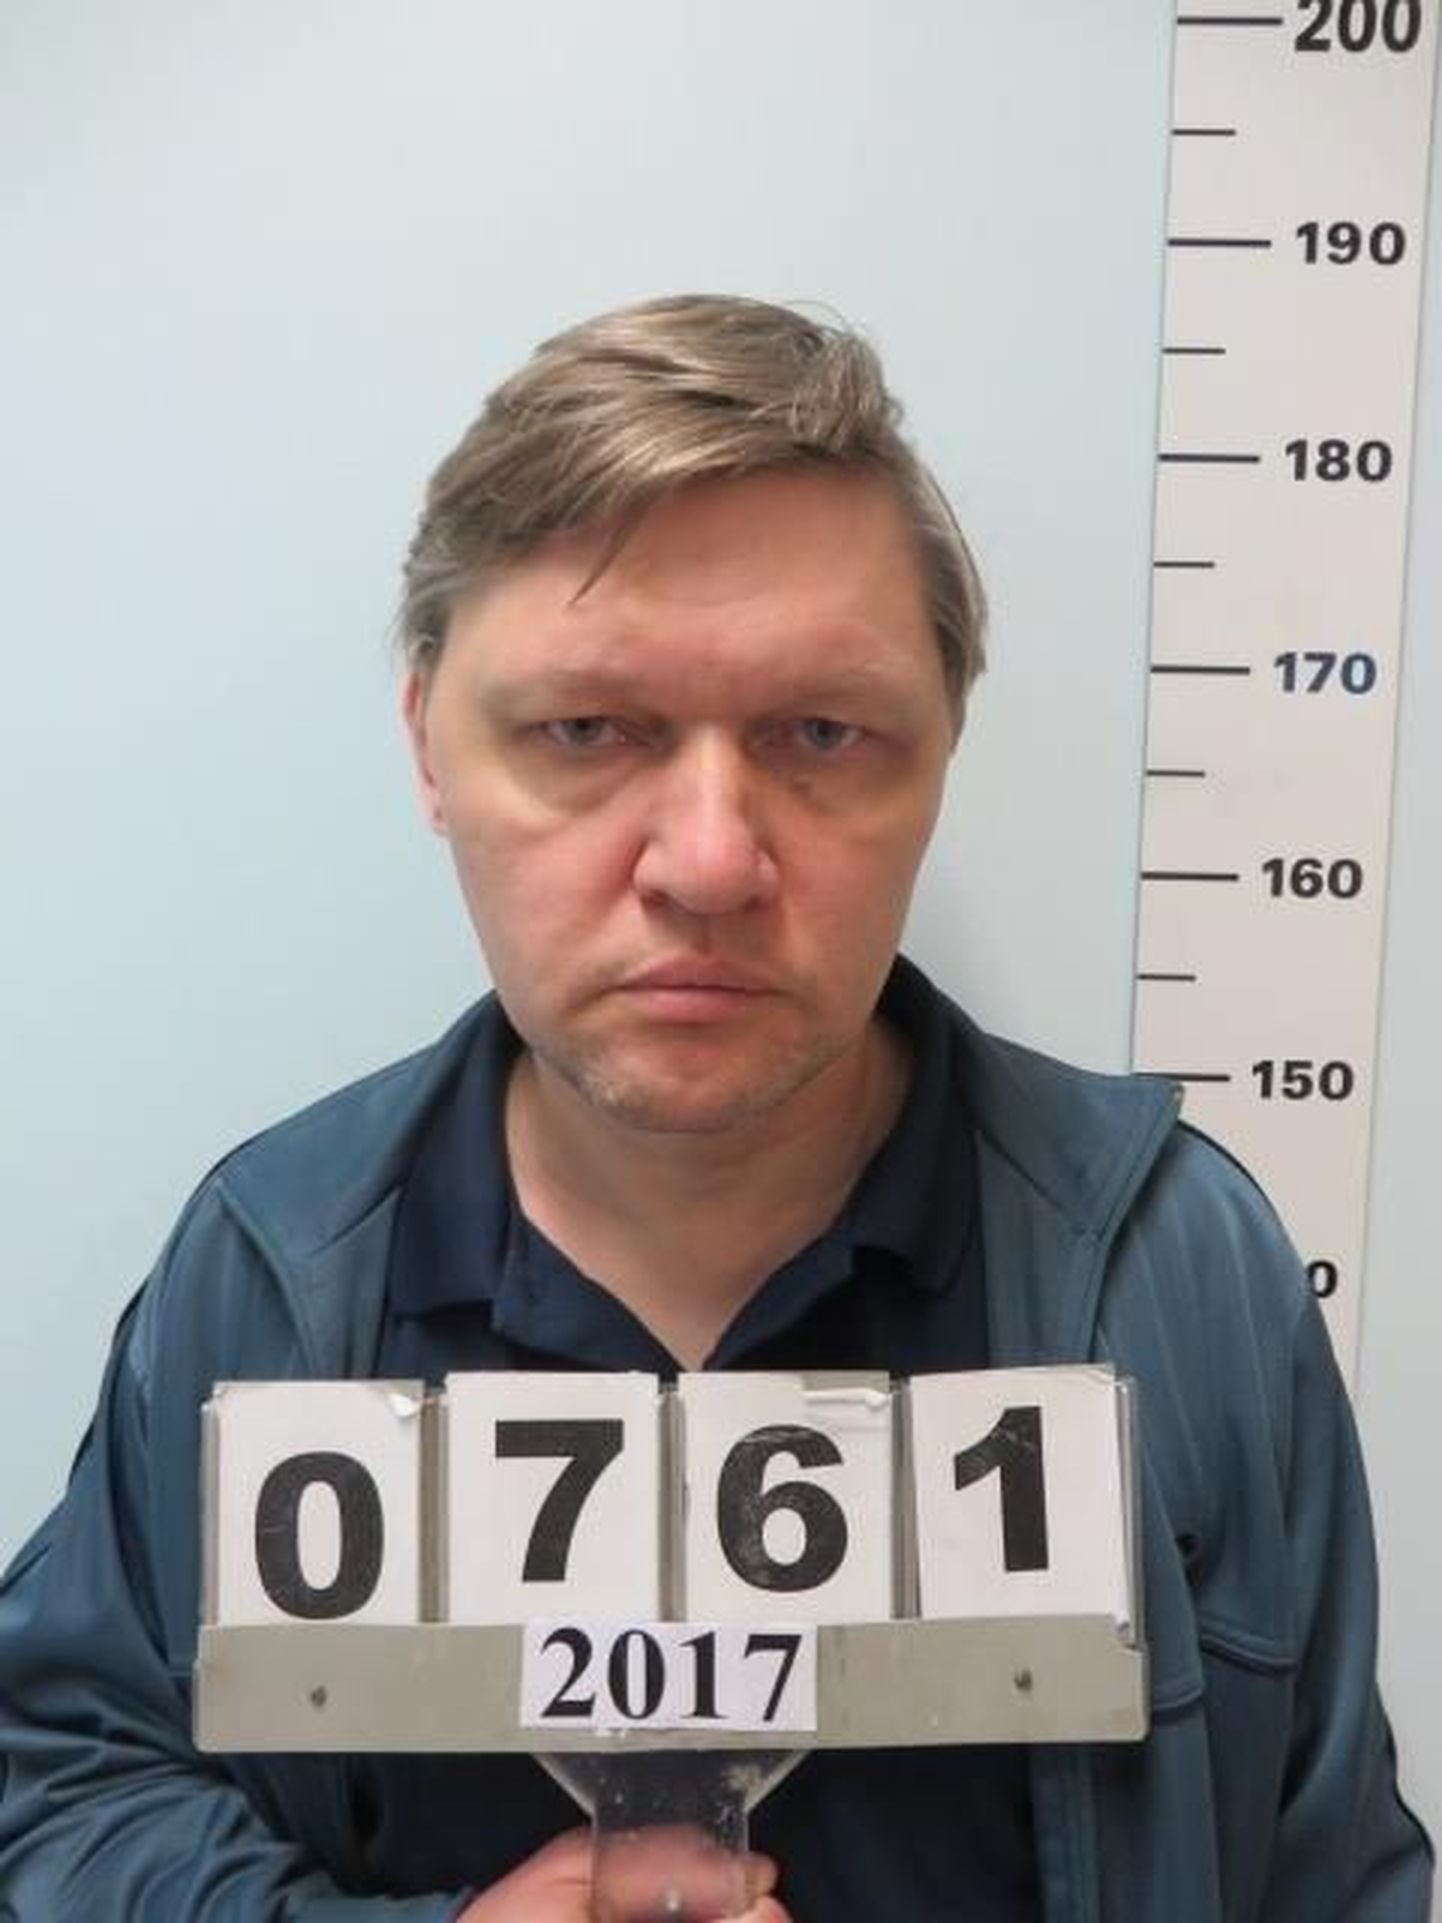 Fotol on laste seksuaalses väärkohtlemises kahtlustatav Ruslan. Politsei palub kõigil võimalike teiste süütegude pealtnägijatel ning kannatanutel võtta ühendust telefonil 5301 9938.